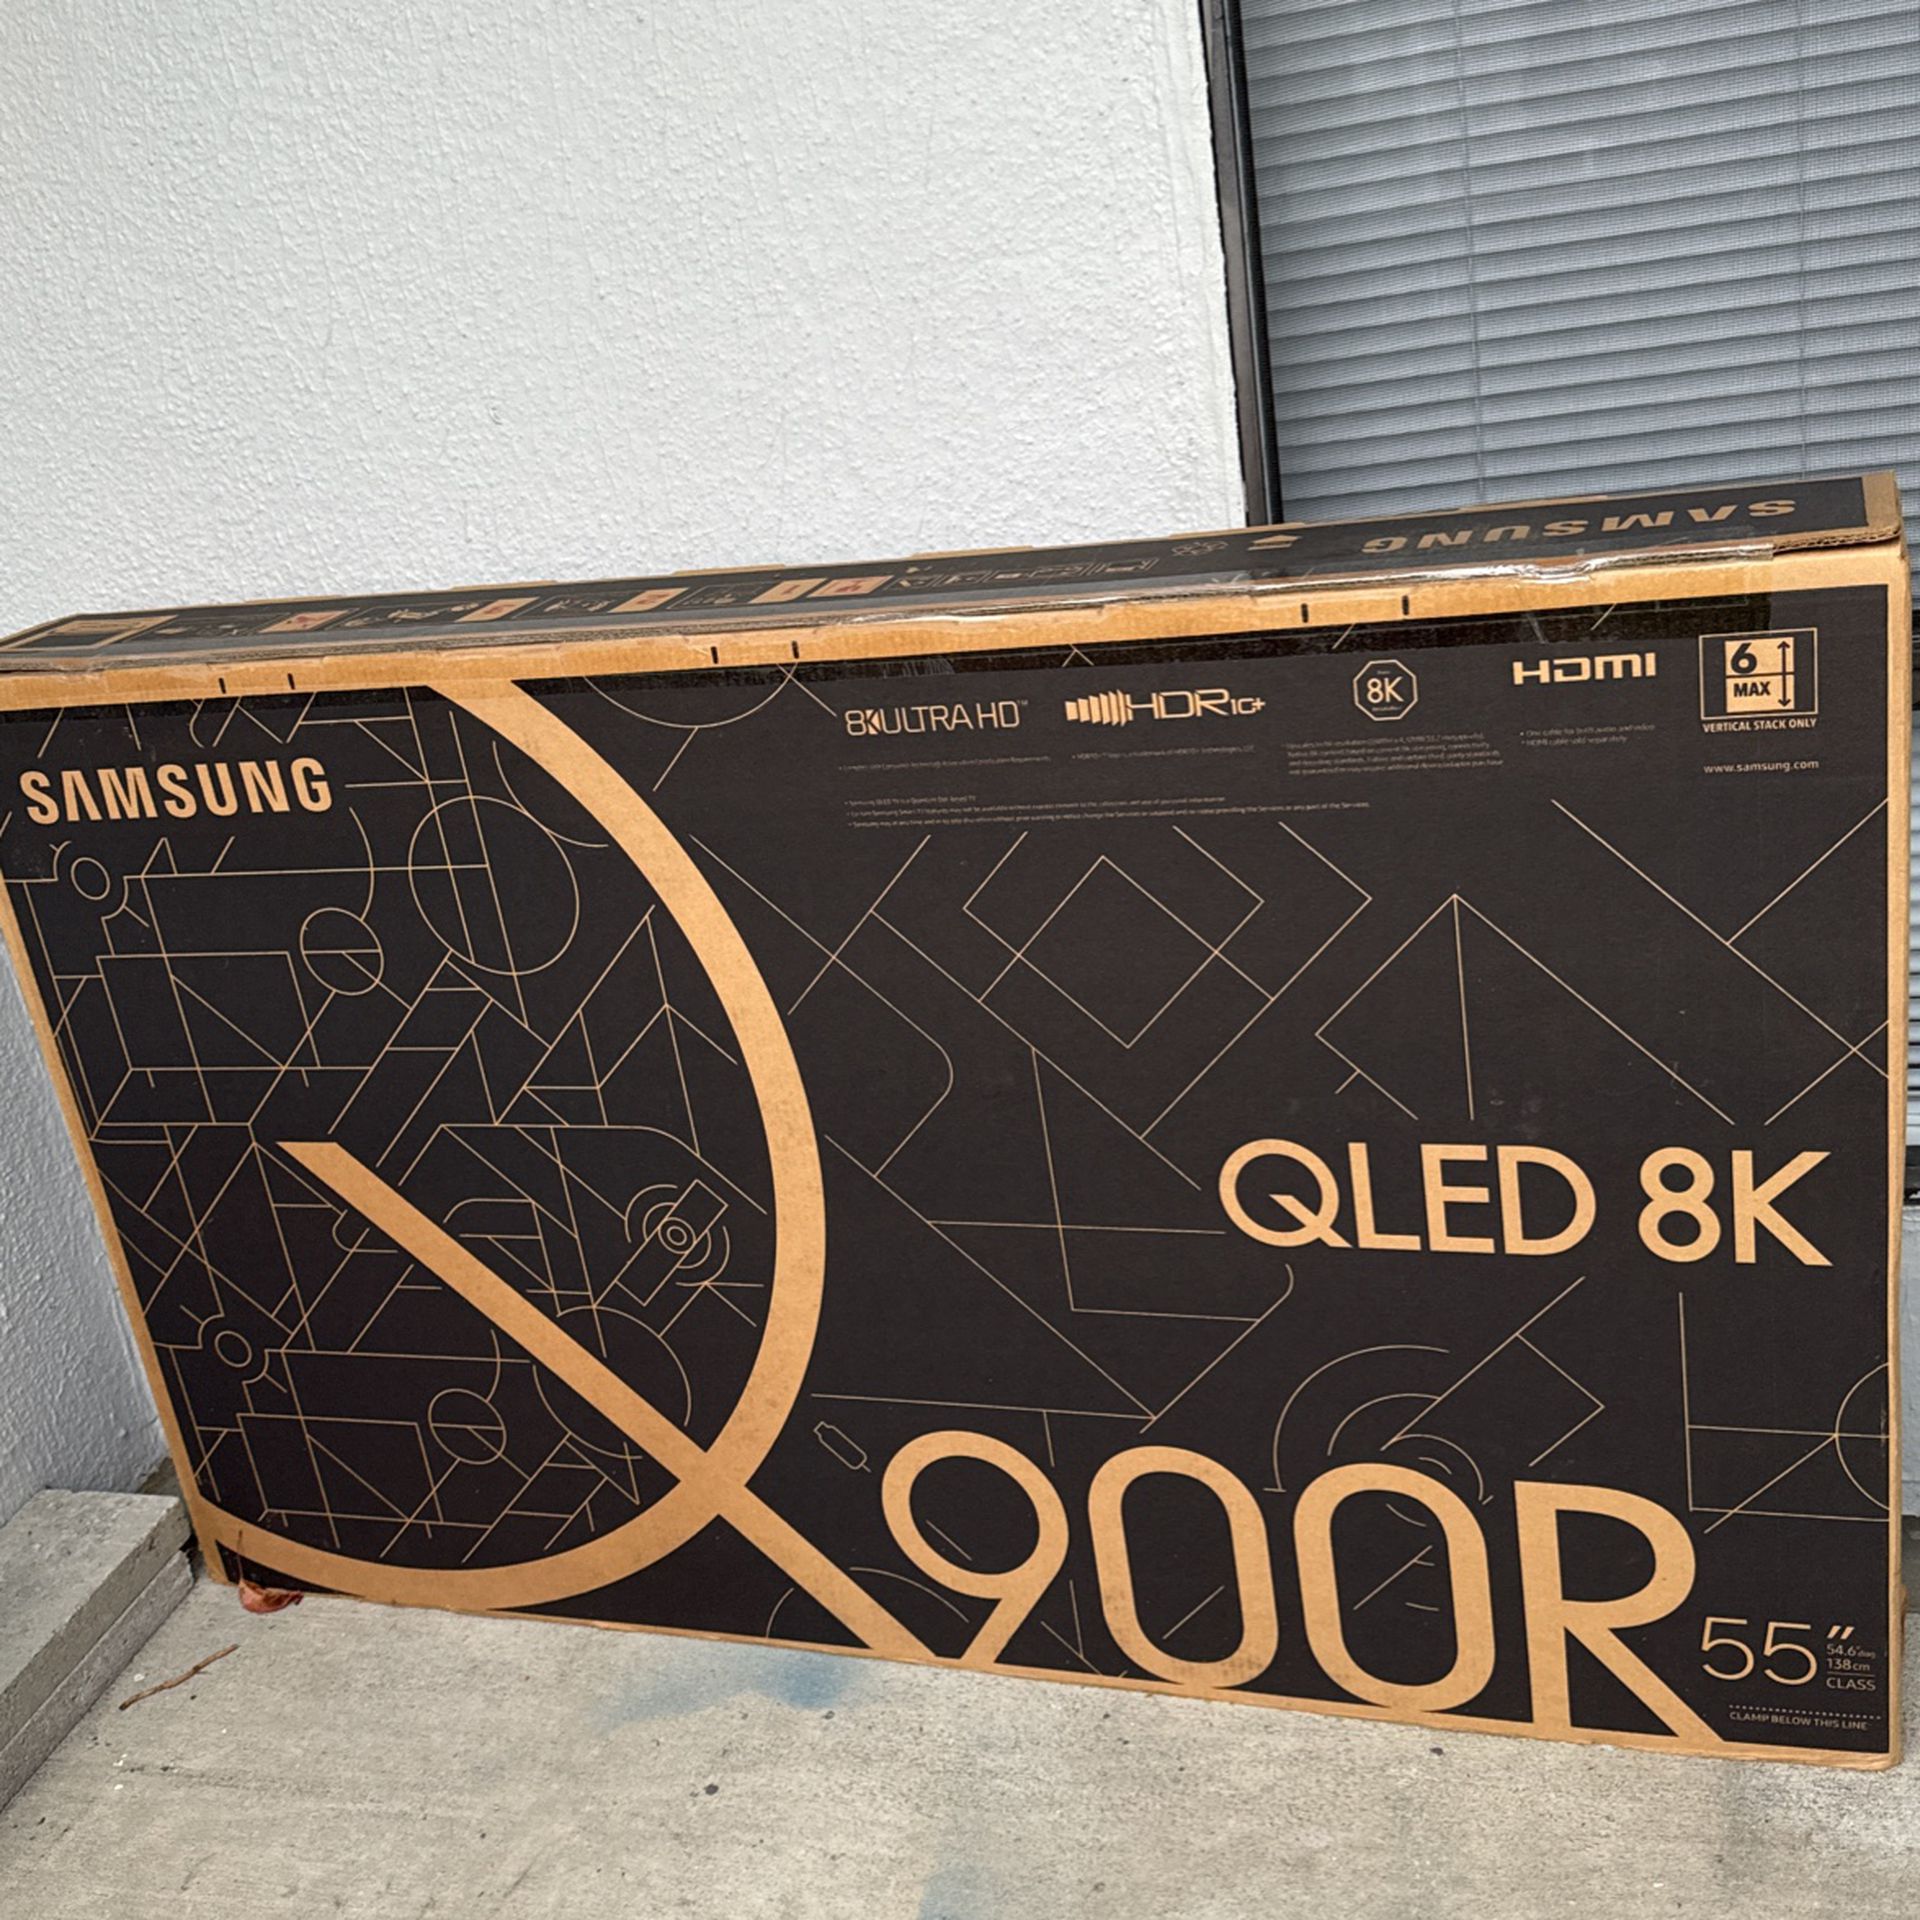 Samsung QLED 8K 900R 55 Inch -$1000 OBO